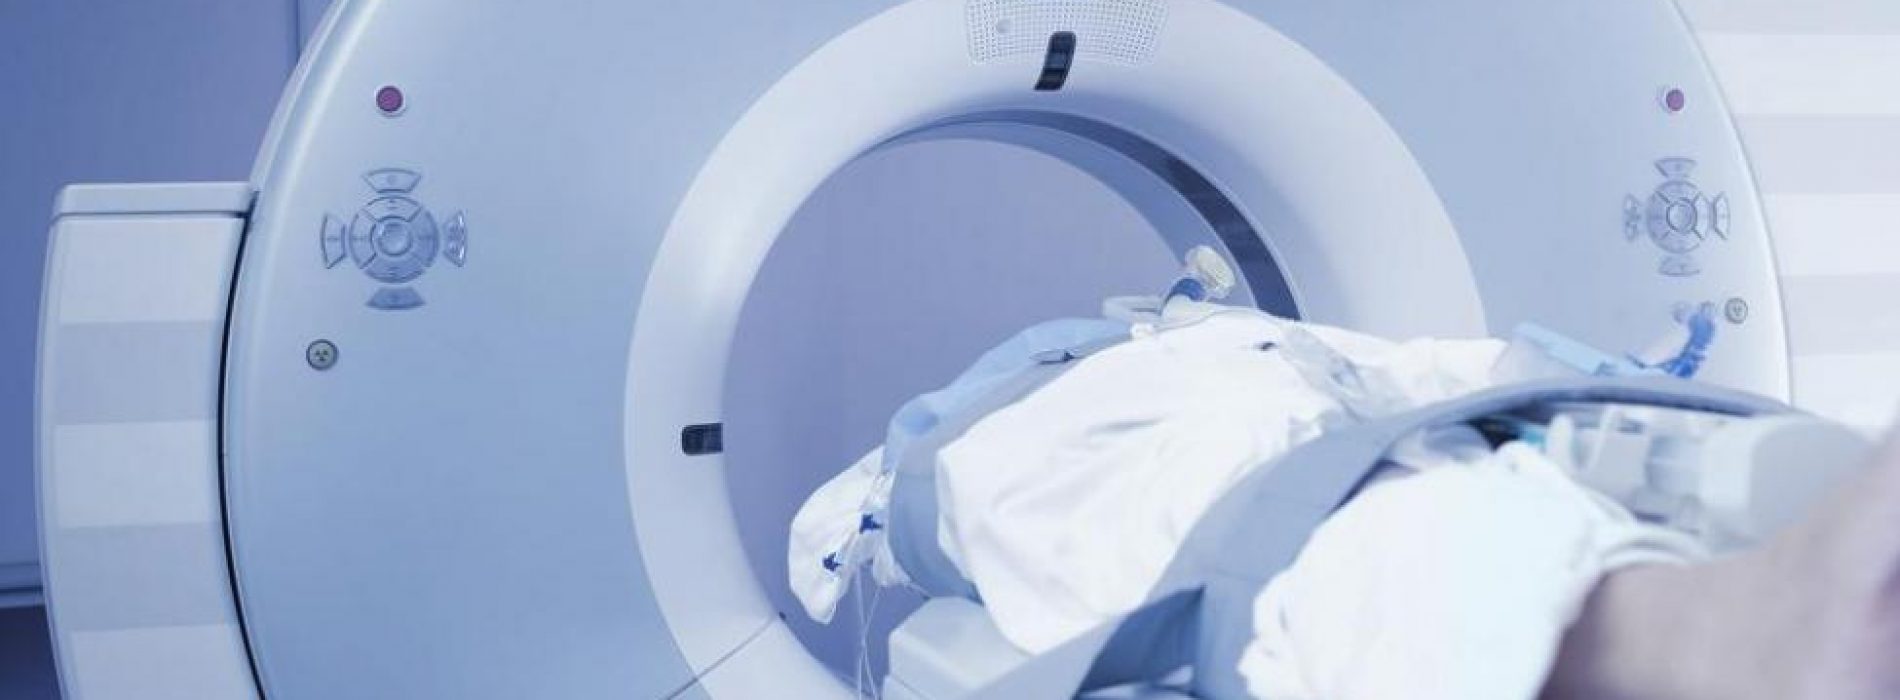 Kijk uit met CT-scans bij kinderen! Ze verviervoudigen de kans op hersentumoren!